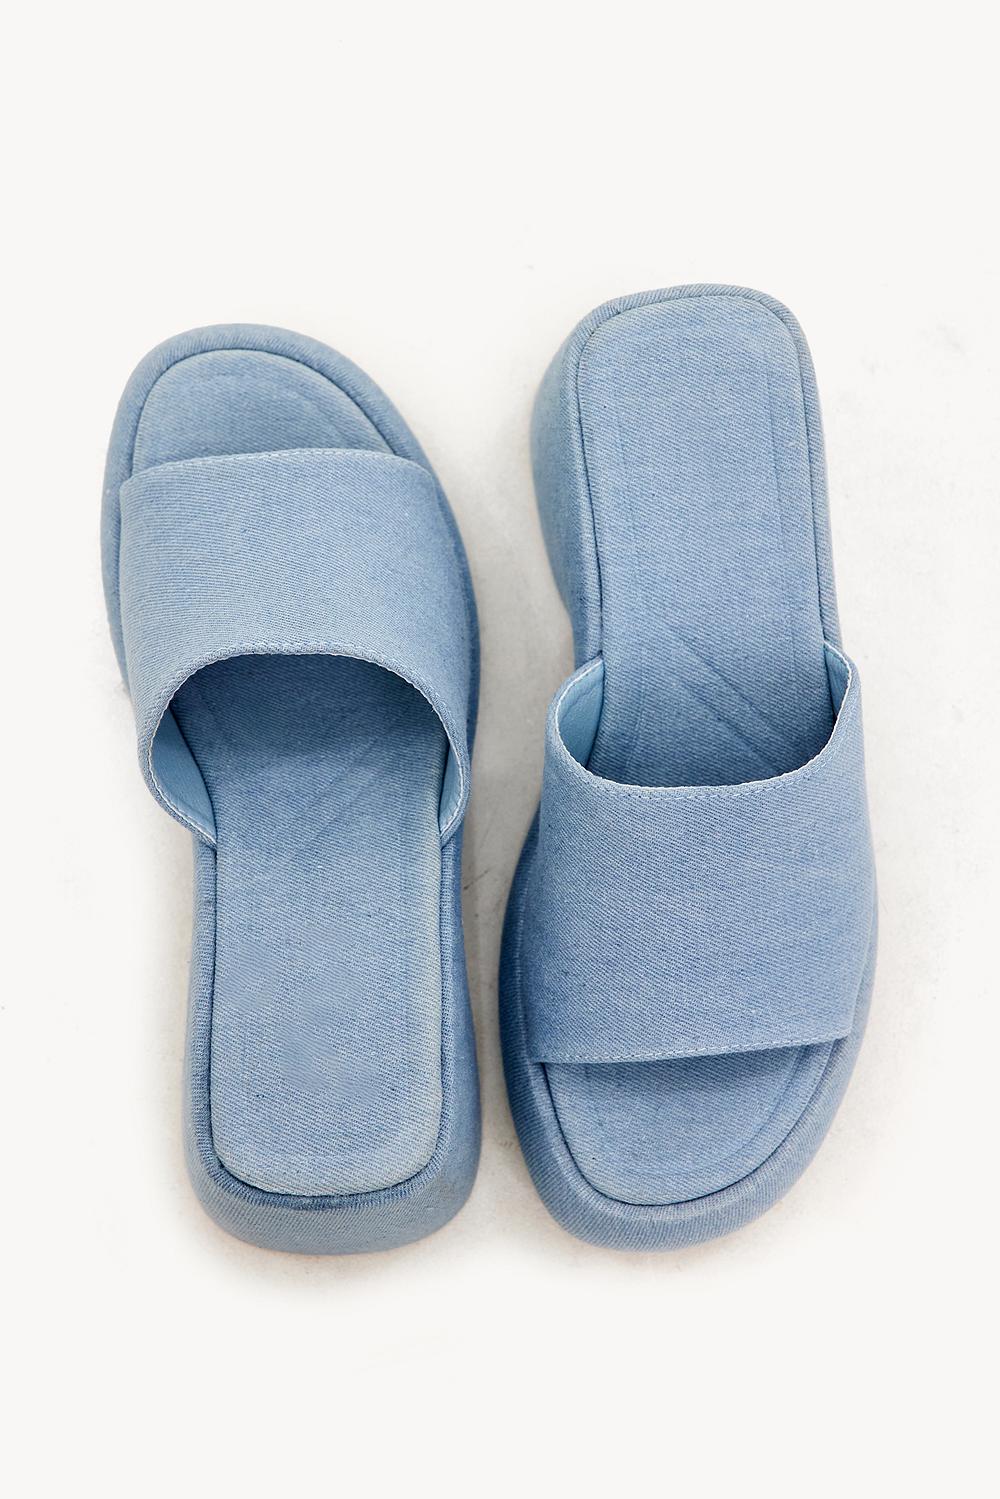 Blue denim slippers